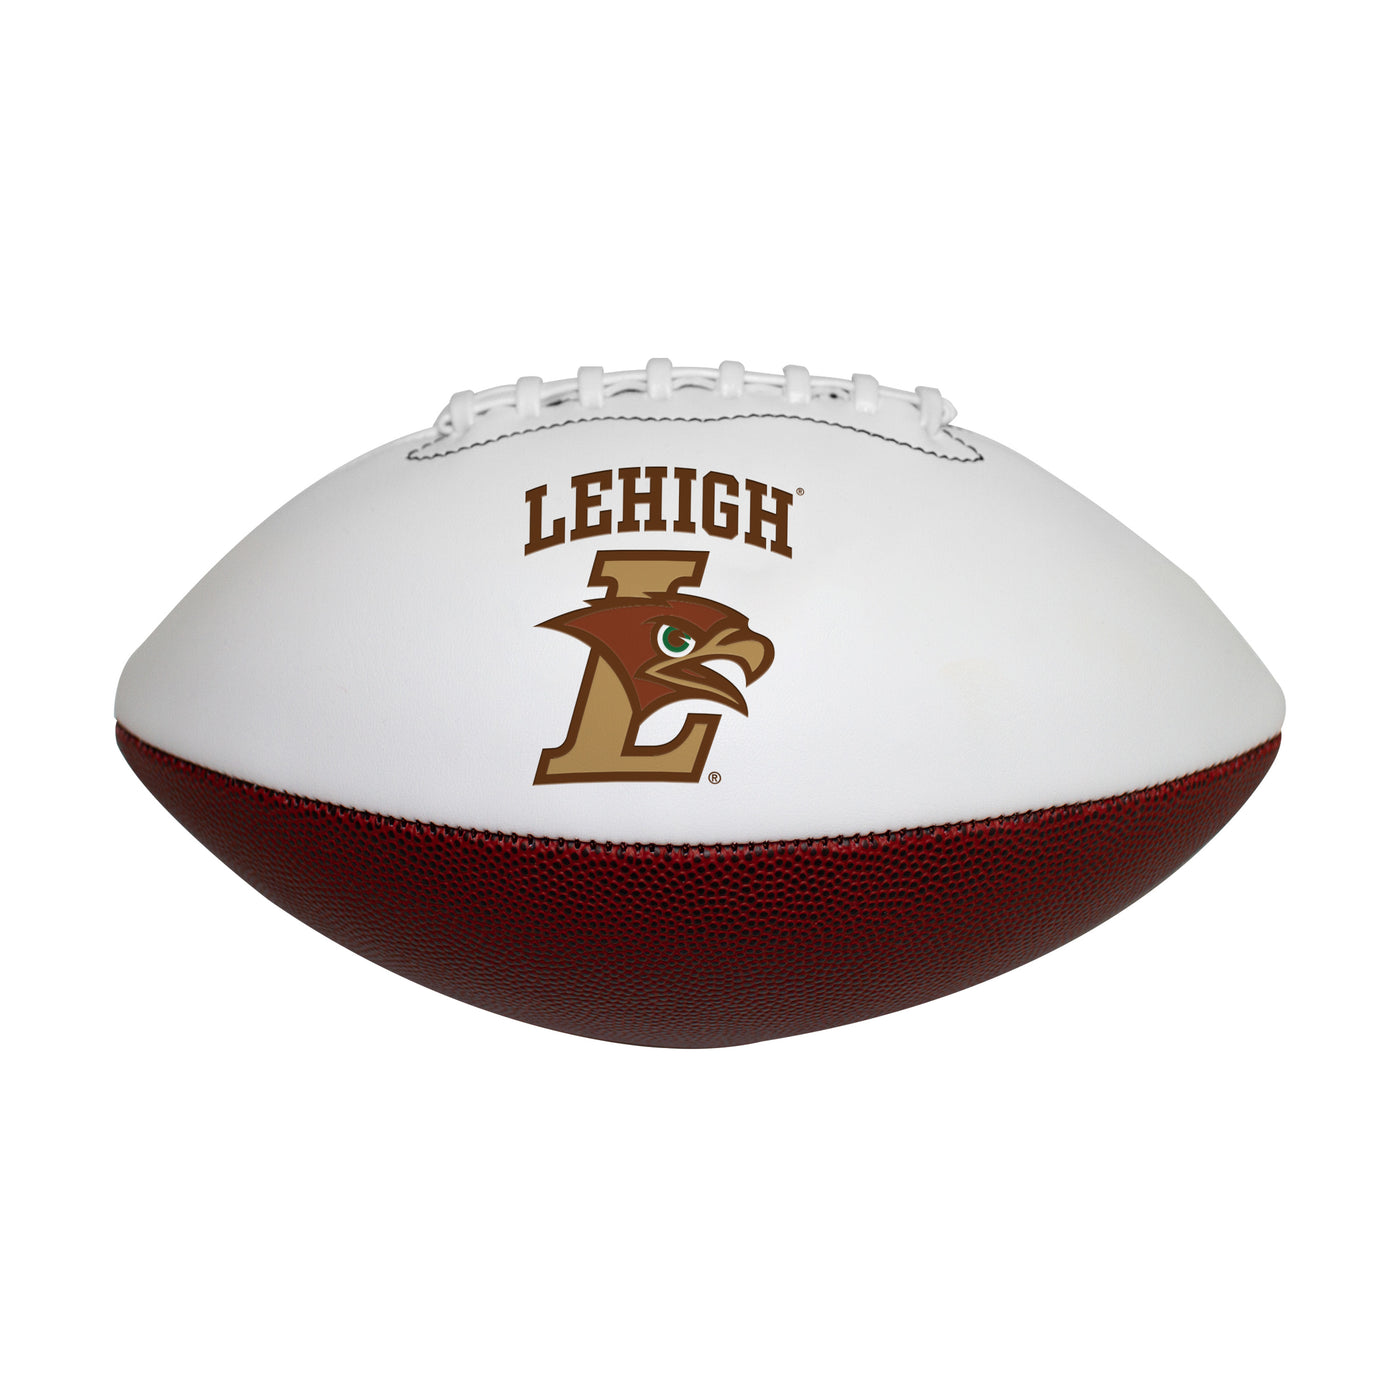 Lehigh Full Size Autograph Football